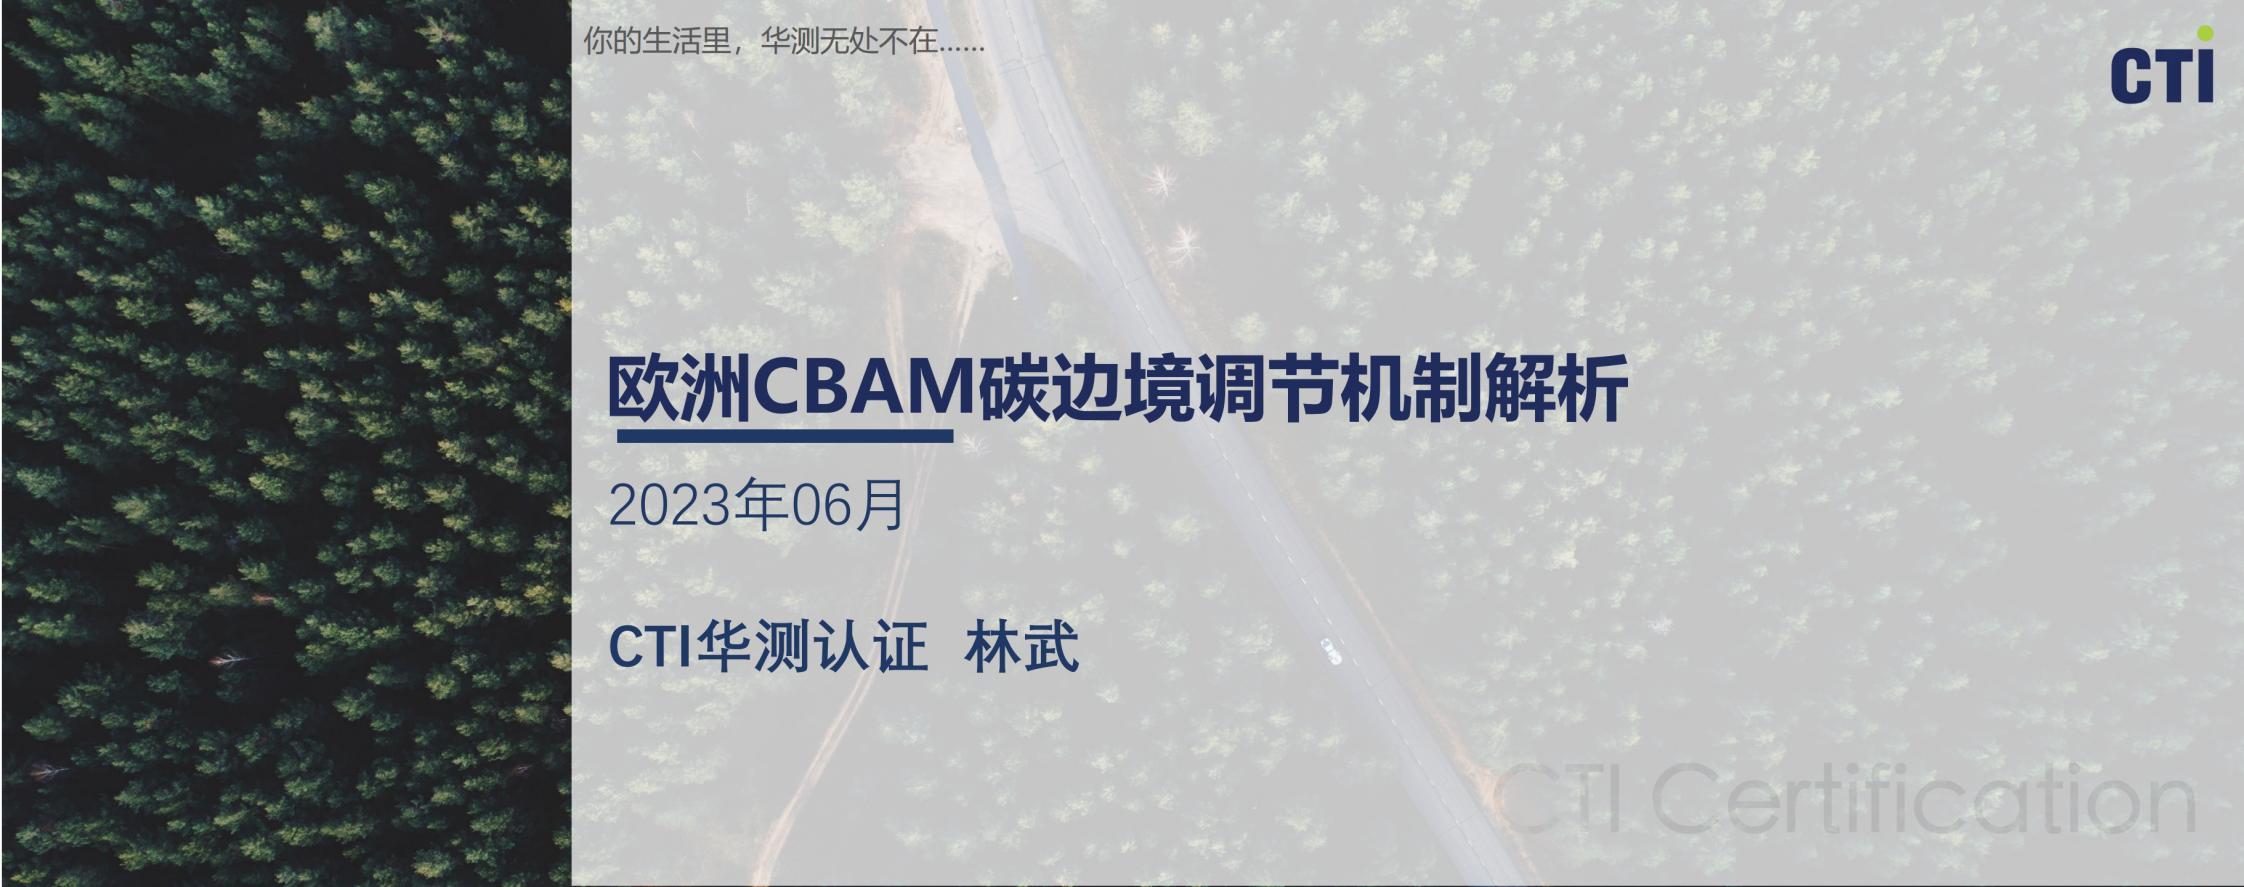 华测林武-贸易便利化中的碳规则 欧洲CBAM碳关税解析